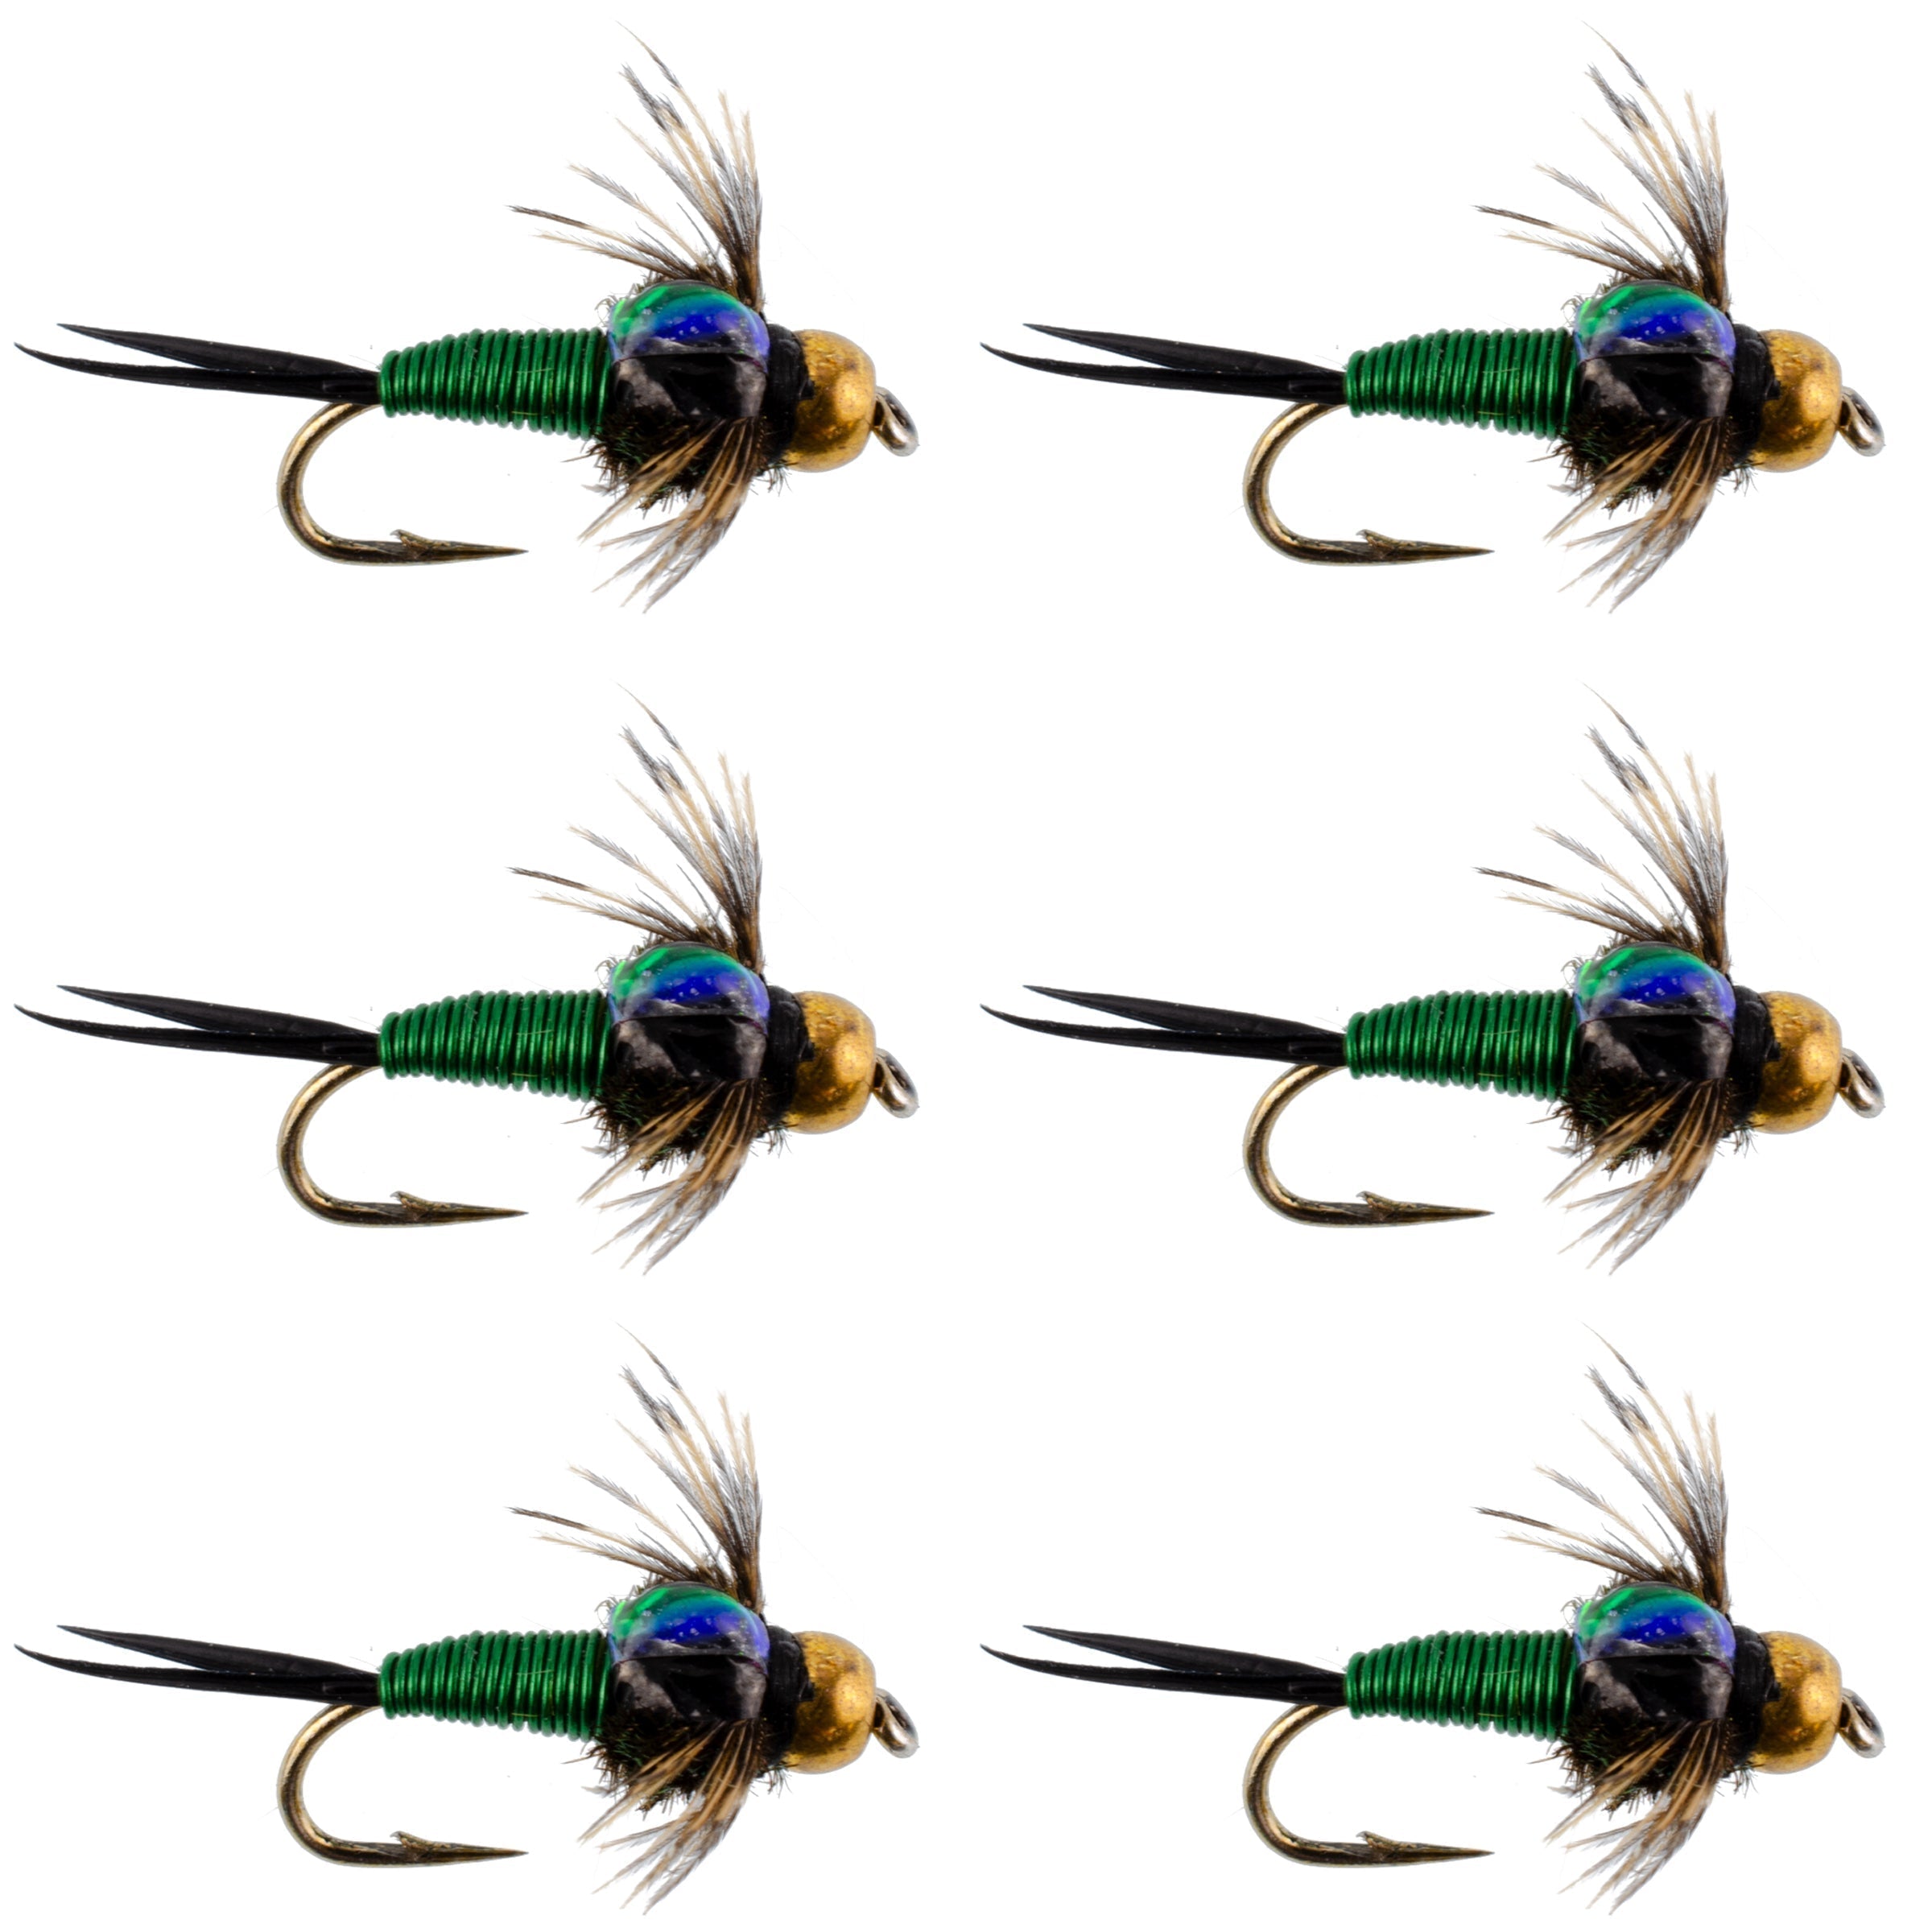 Bead Head Green Copper John Nymph Fly Fishing Flies - Set of 6 Flies Hook Size 12